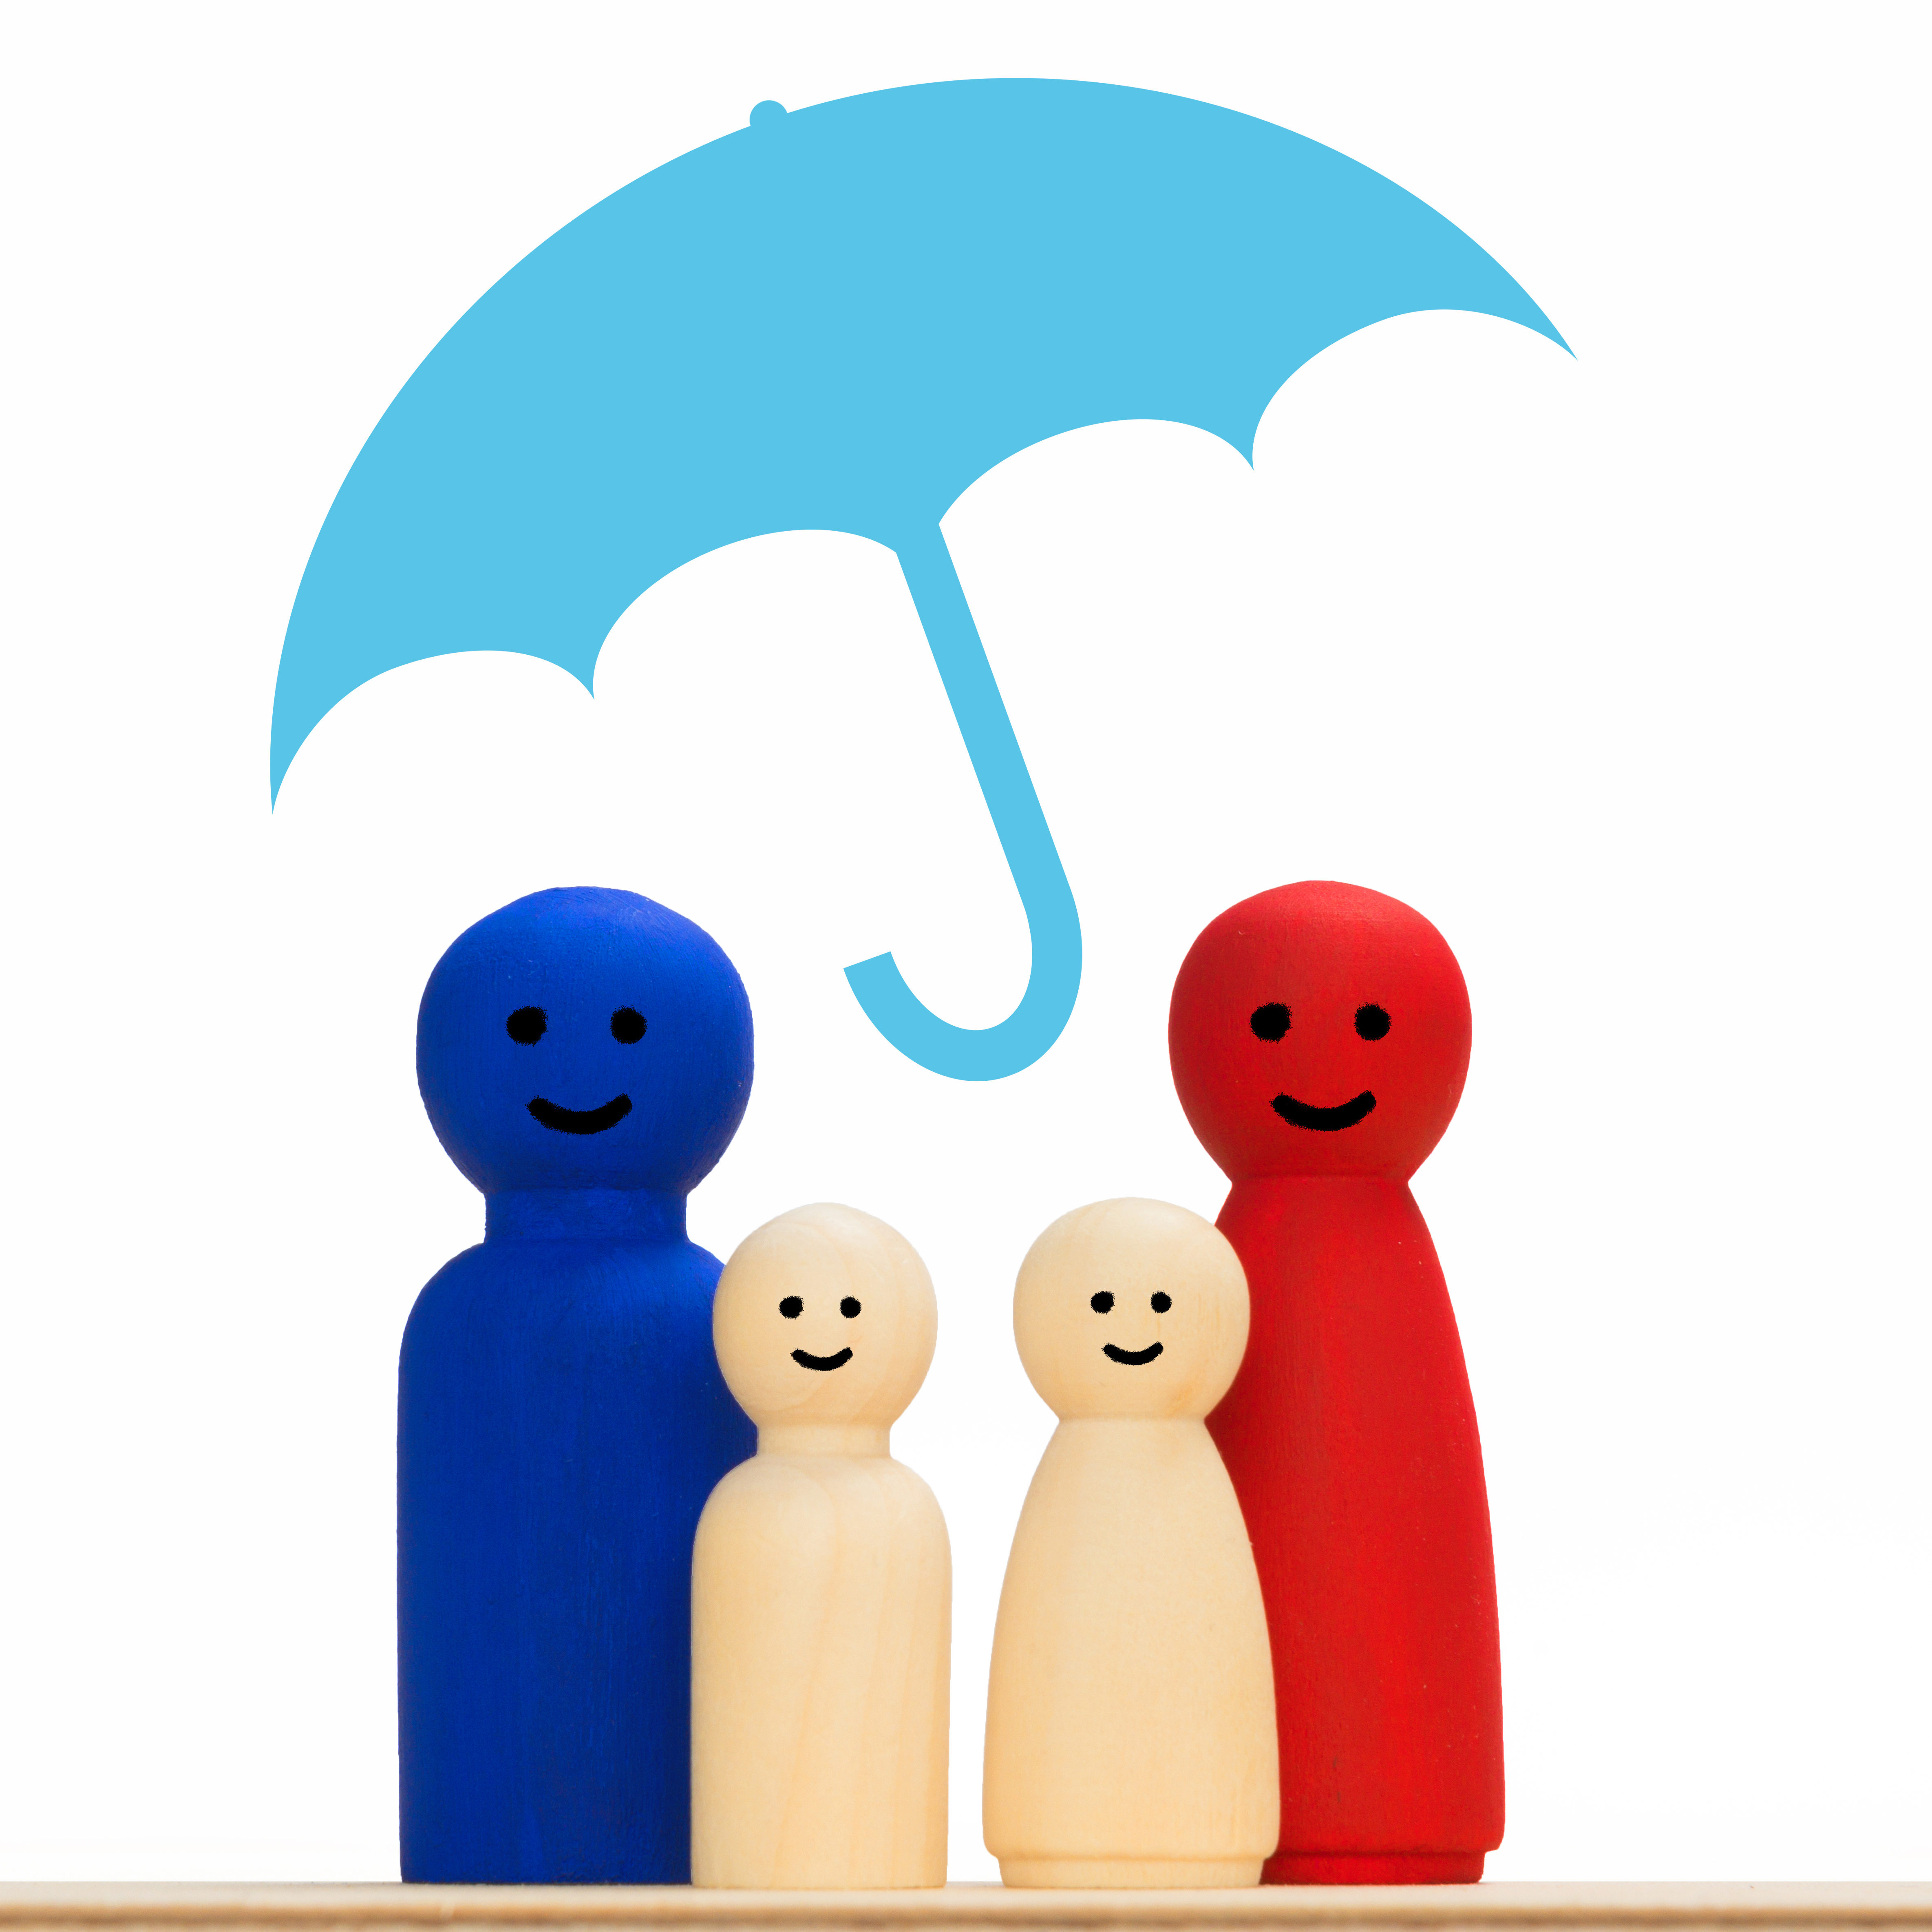 Familie mit Schirm schützt die Familie. Gesundheitsfürsorge, Sicherheit. Hilfe der Versicherung Konzept mit Schrirm, abgeschirmt